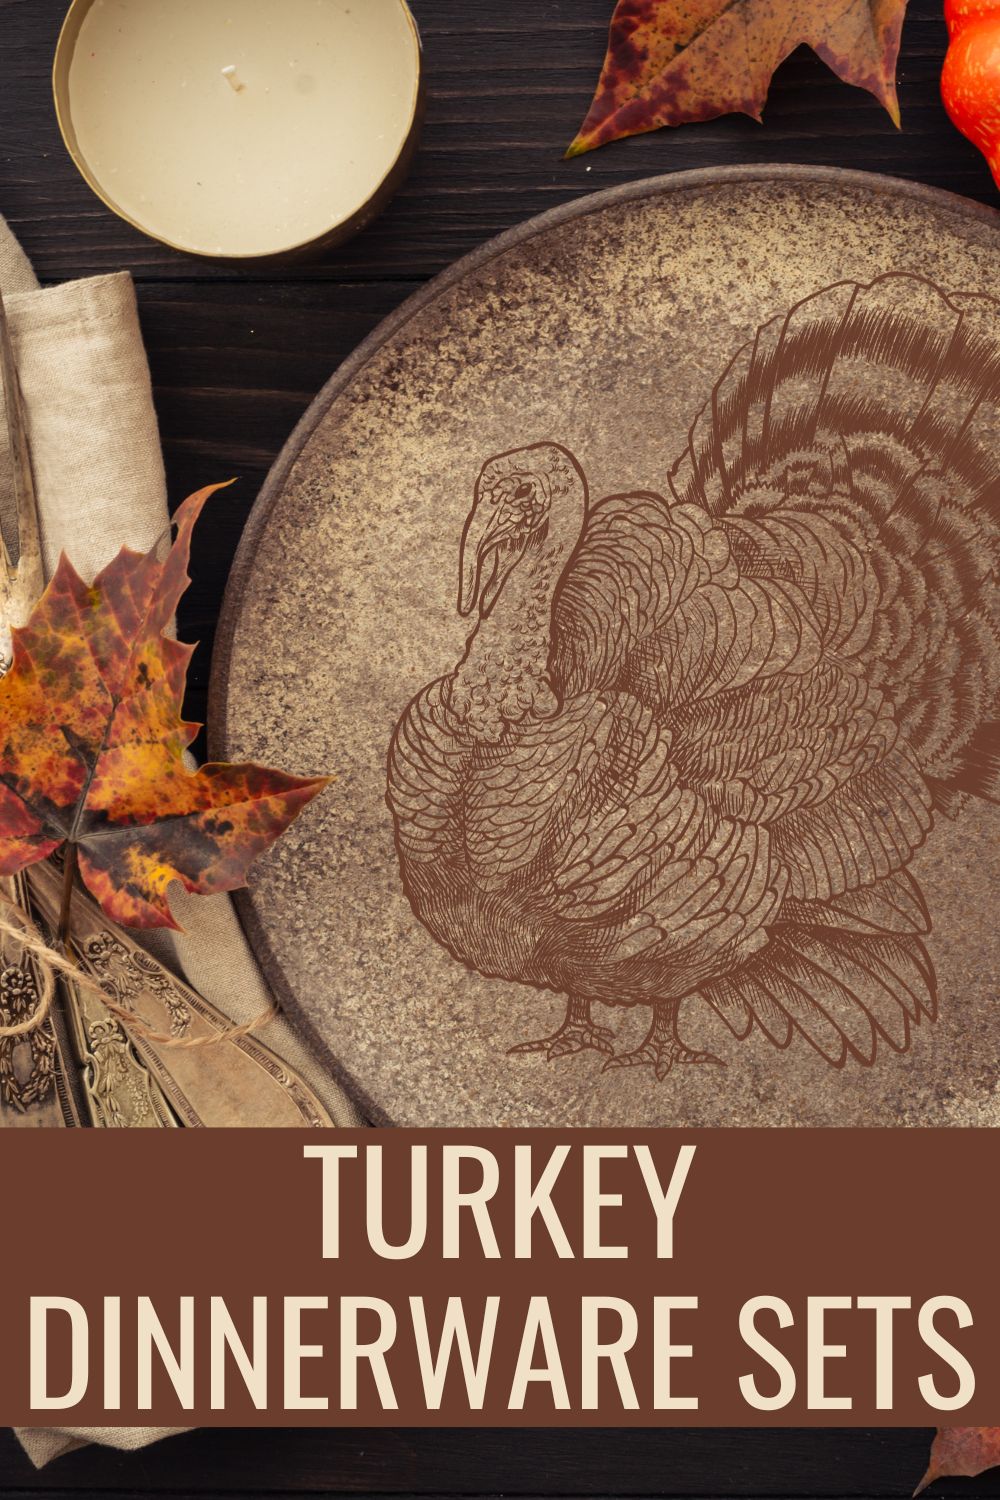 Turkey dinnerware sets.